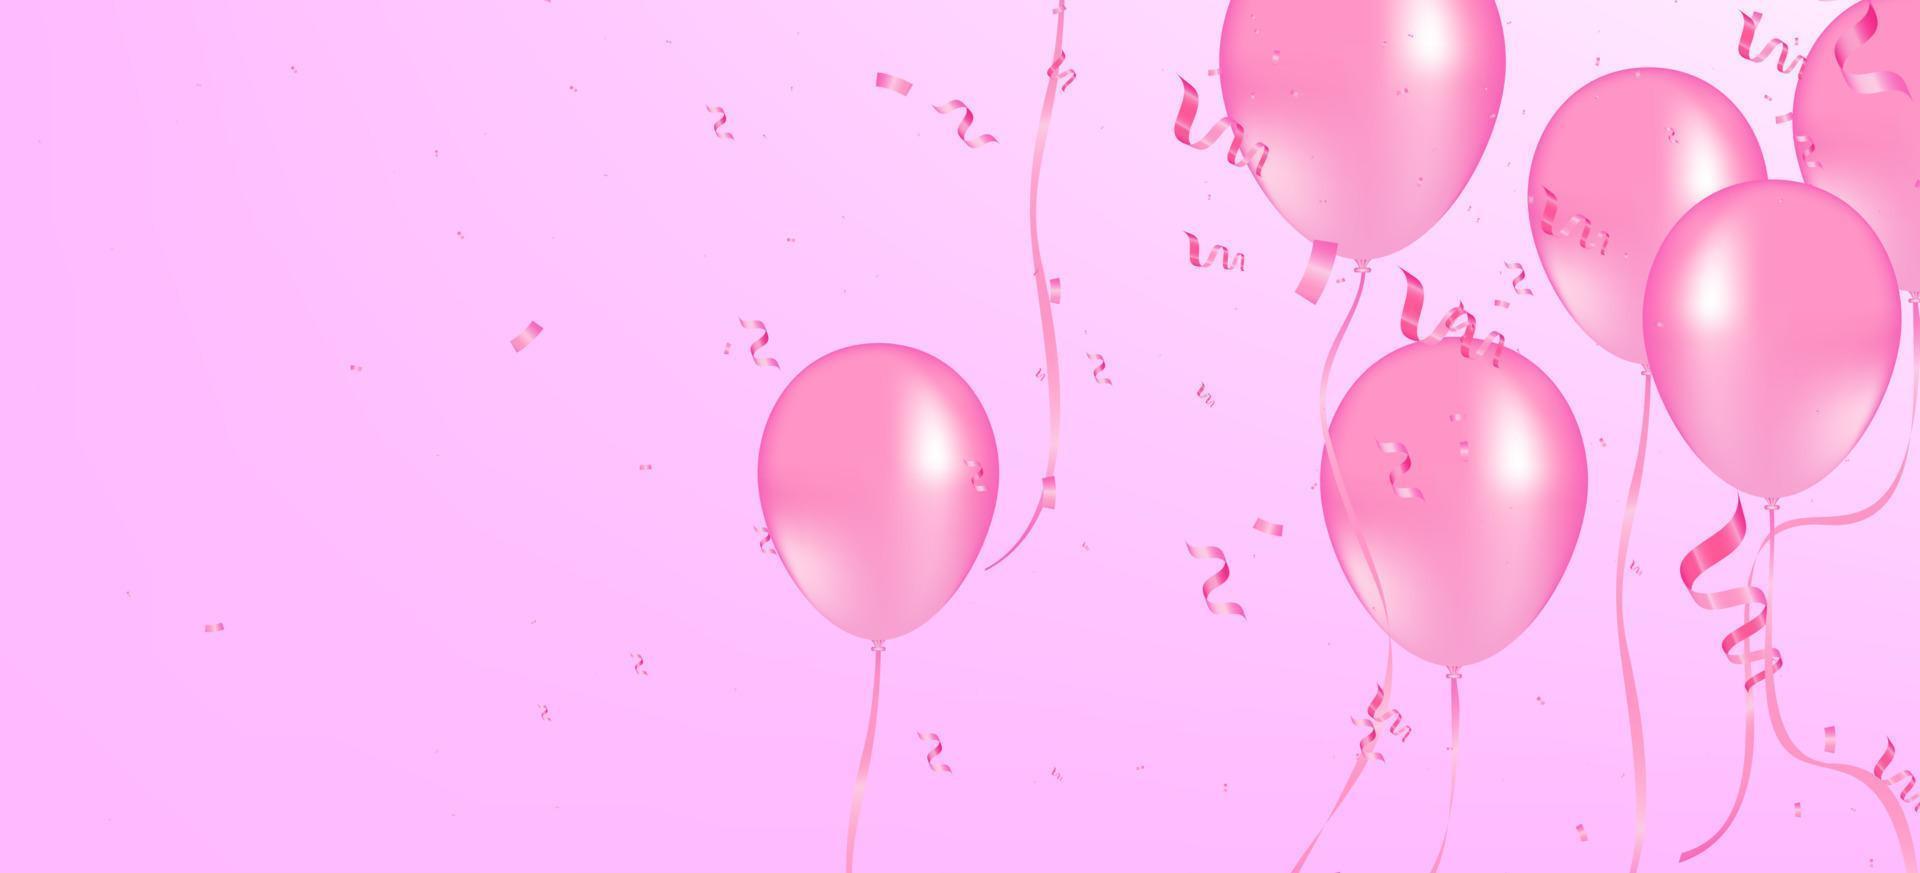 Vektor rosa Ballon auf rosa Hintergrund. rosa luftballons und konfetti vektor hintergrund party und feier geburtstag verwendet.